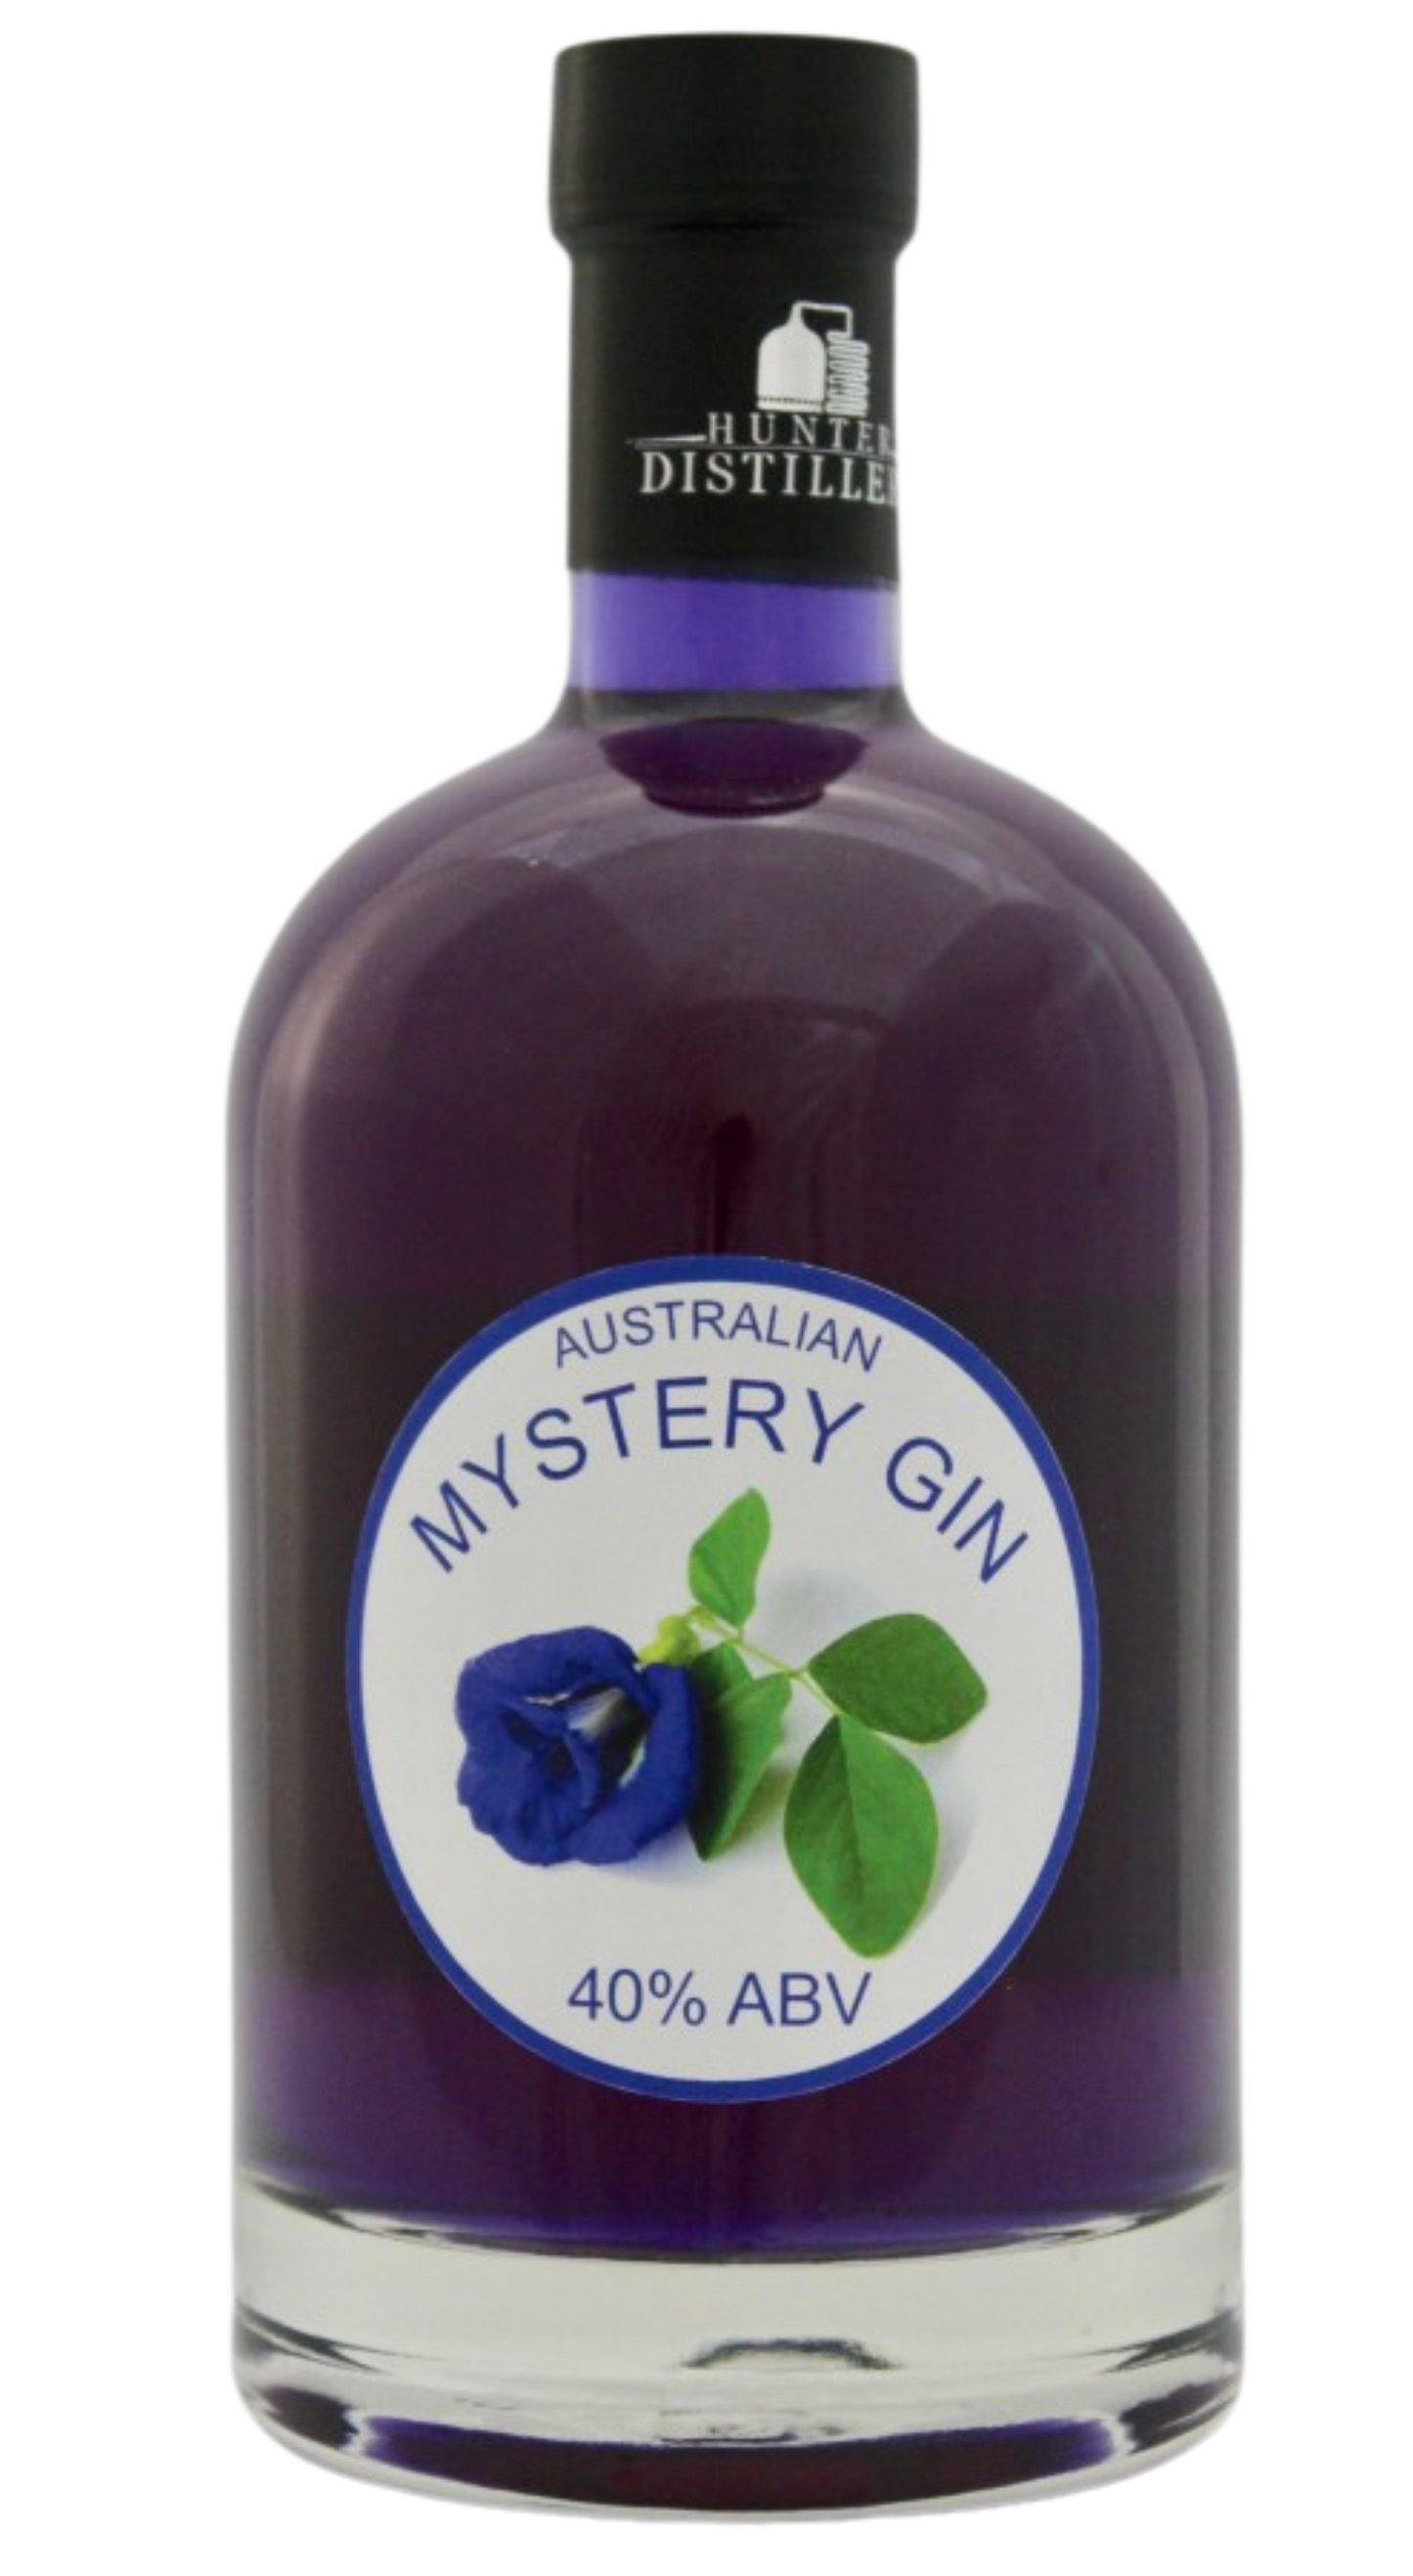 Mystery Gin